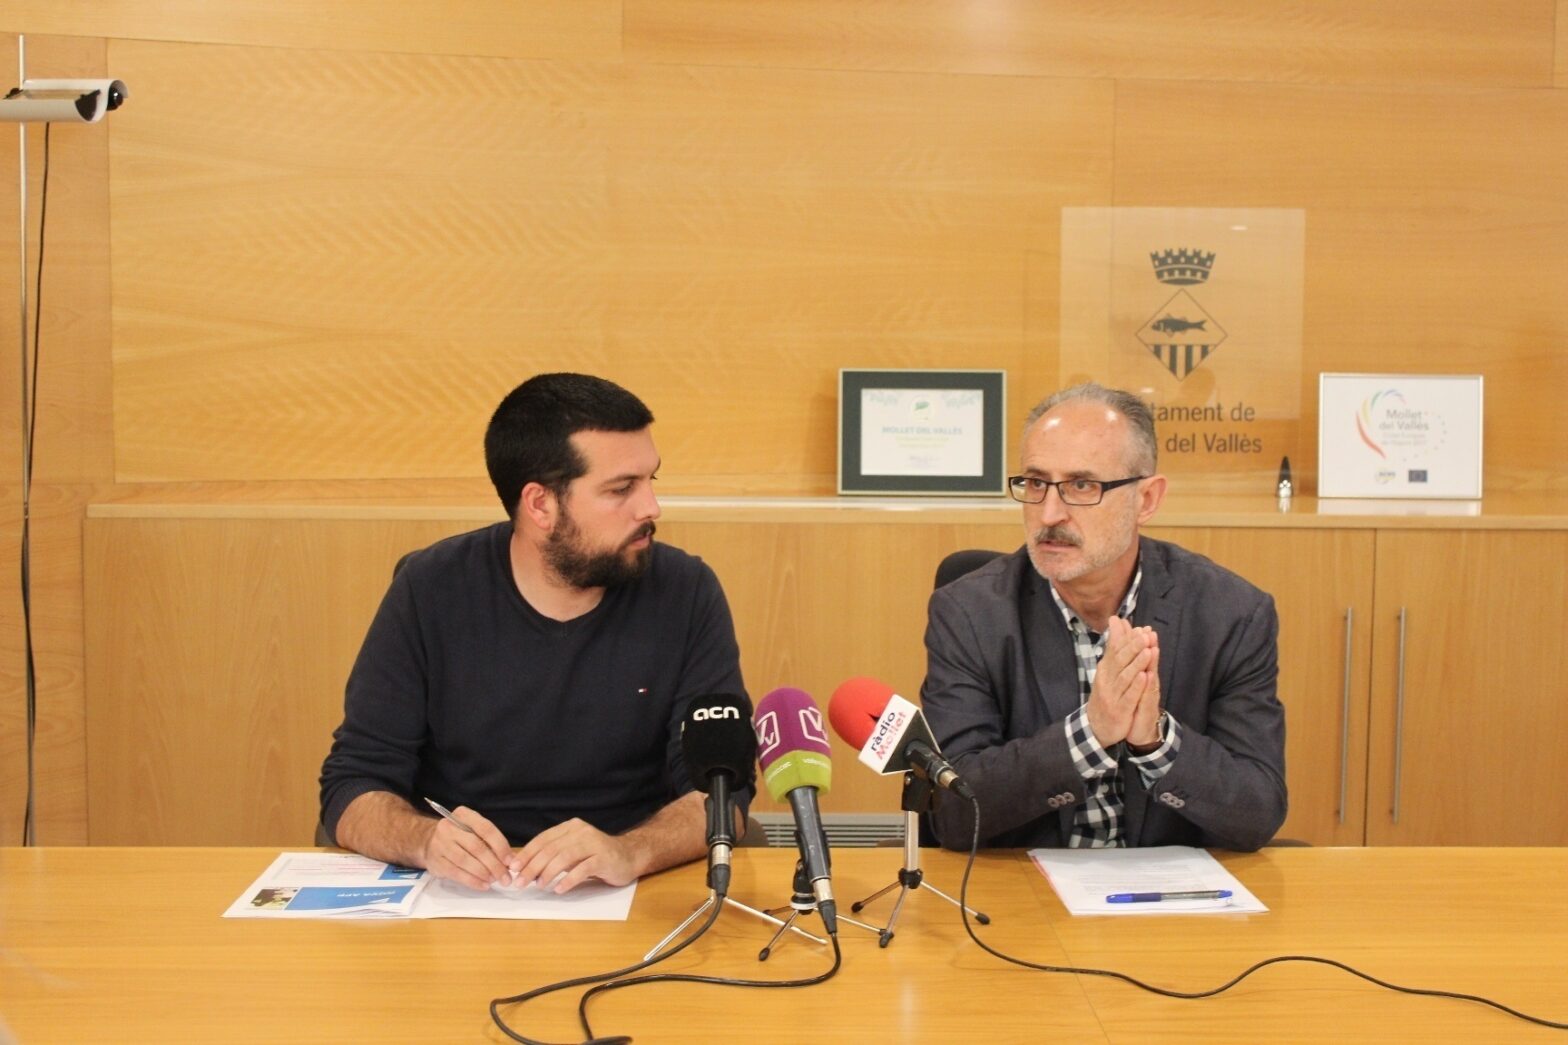 El alcalde socialista de Mollet del Vallés (Barcelona) denuncia acoso por oponerse a una mezquita